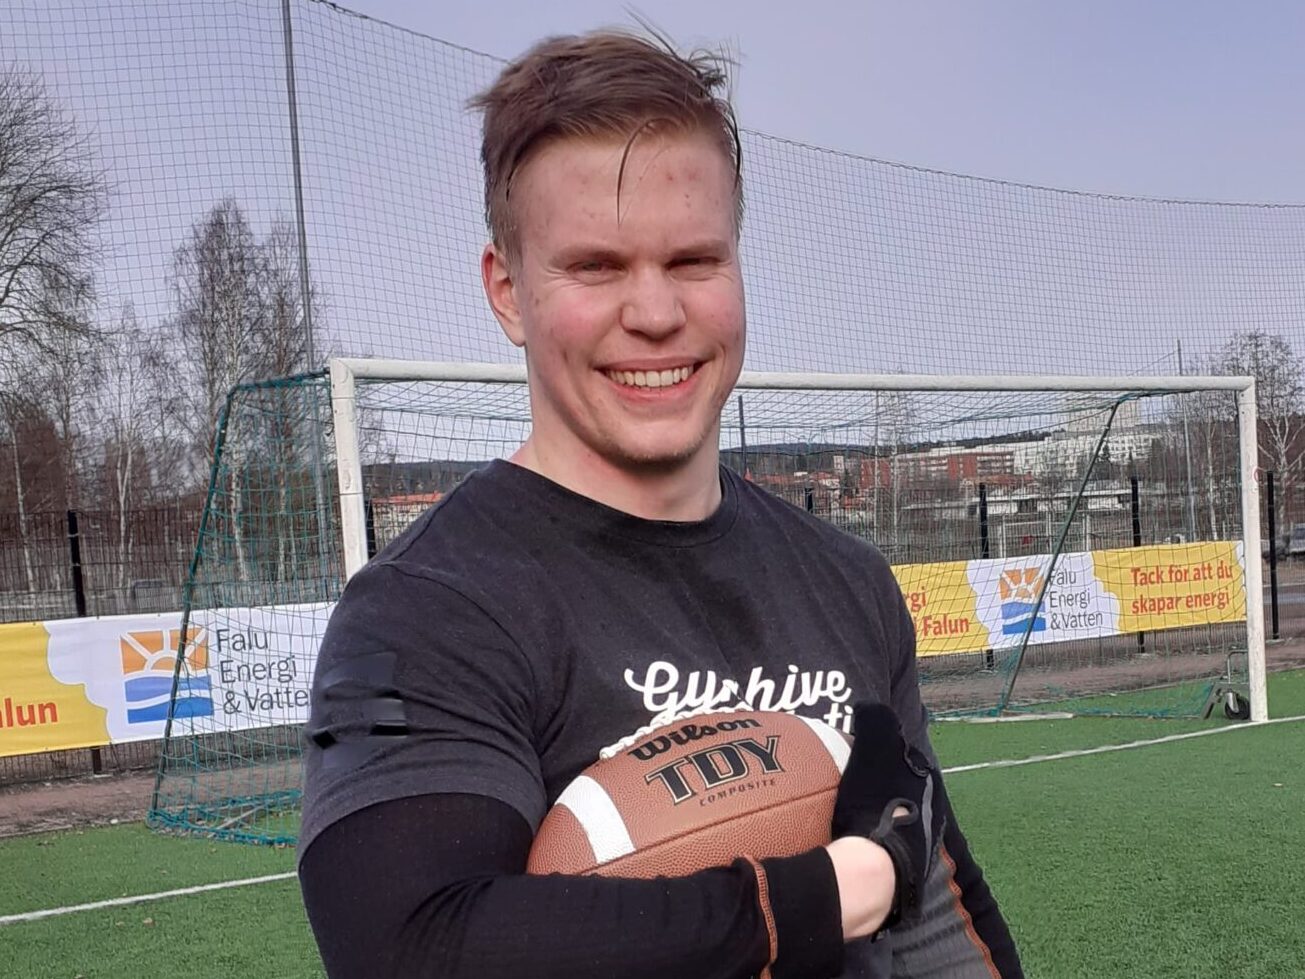 Defensive End - Johan Persson, 24 från Hedemora. Började spela med Rebels 2020 och studerar till behandlingspedagog. Jobbar på LVM hem och tränar styrkelyft. Är annars datorspelsentusiast och dreglar över feta burgare. Strävar efter att bli en redig bult.